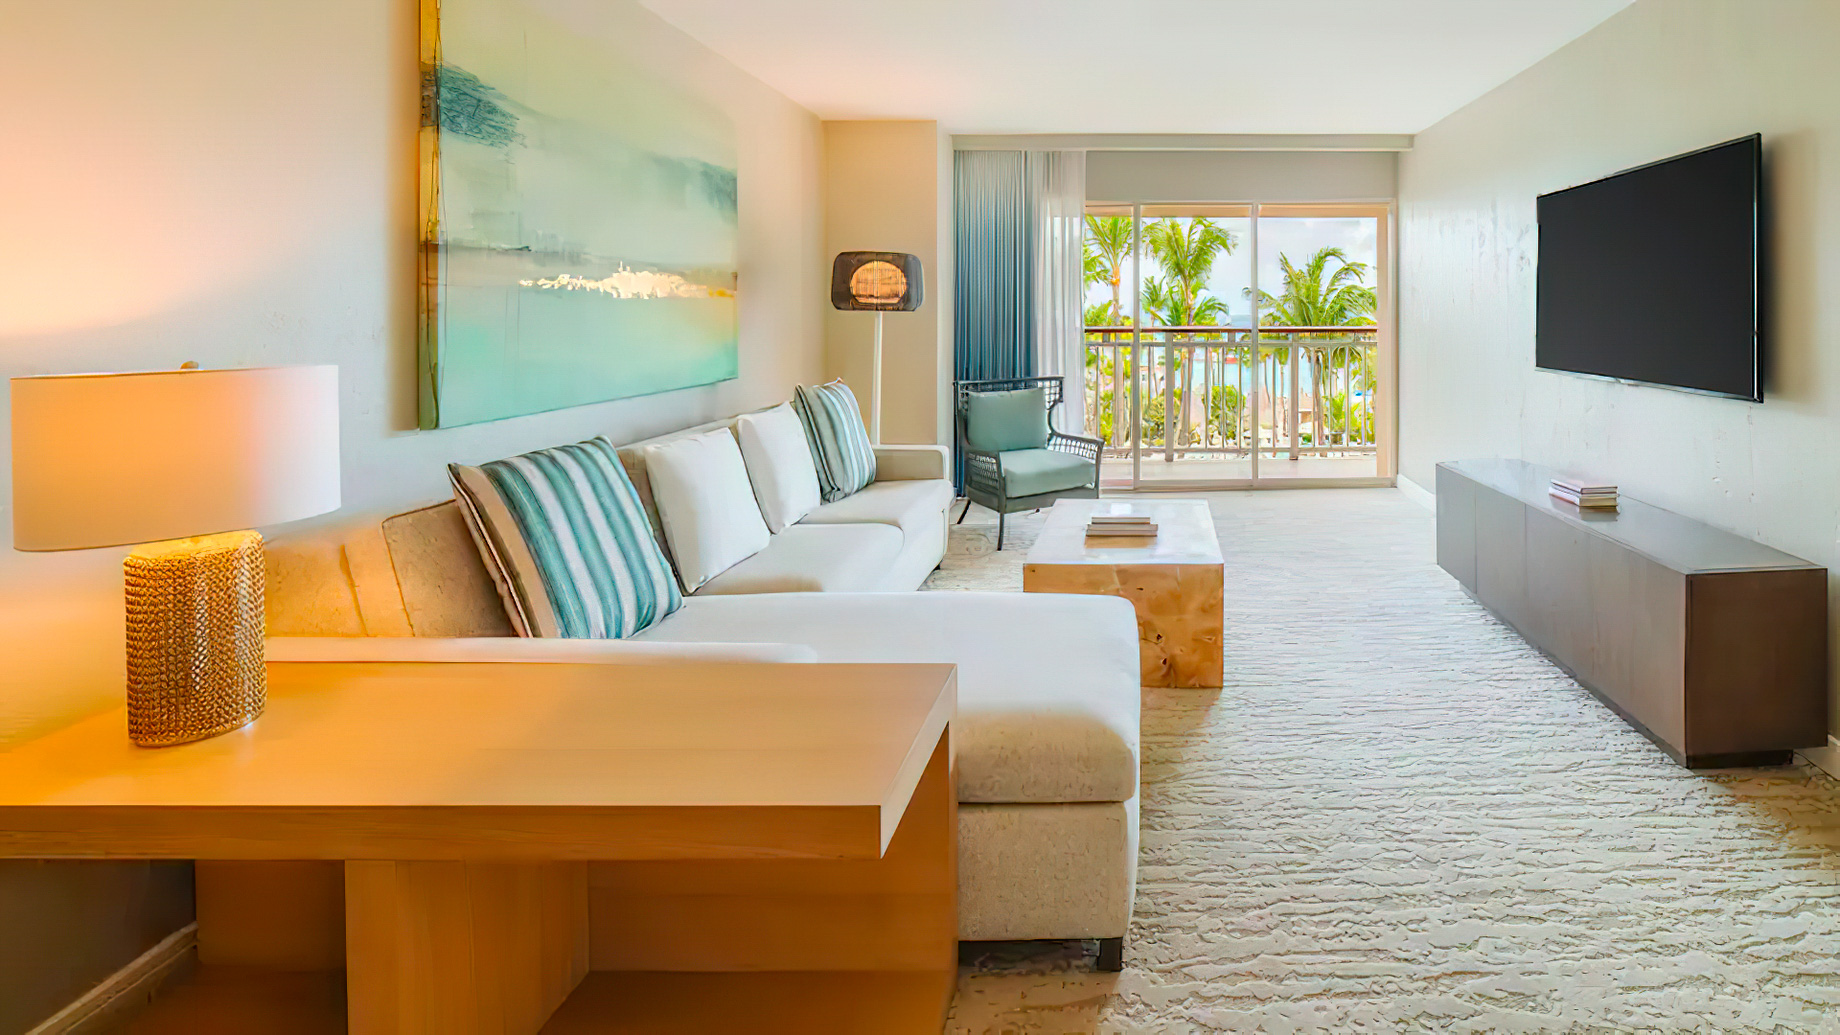 Hyatt Regency Aruba Resort & Casino – Noord, Aruba – King Resort View Cayena Suite with Balcony